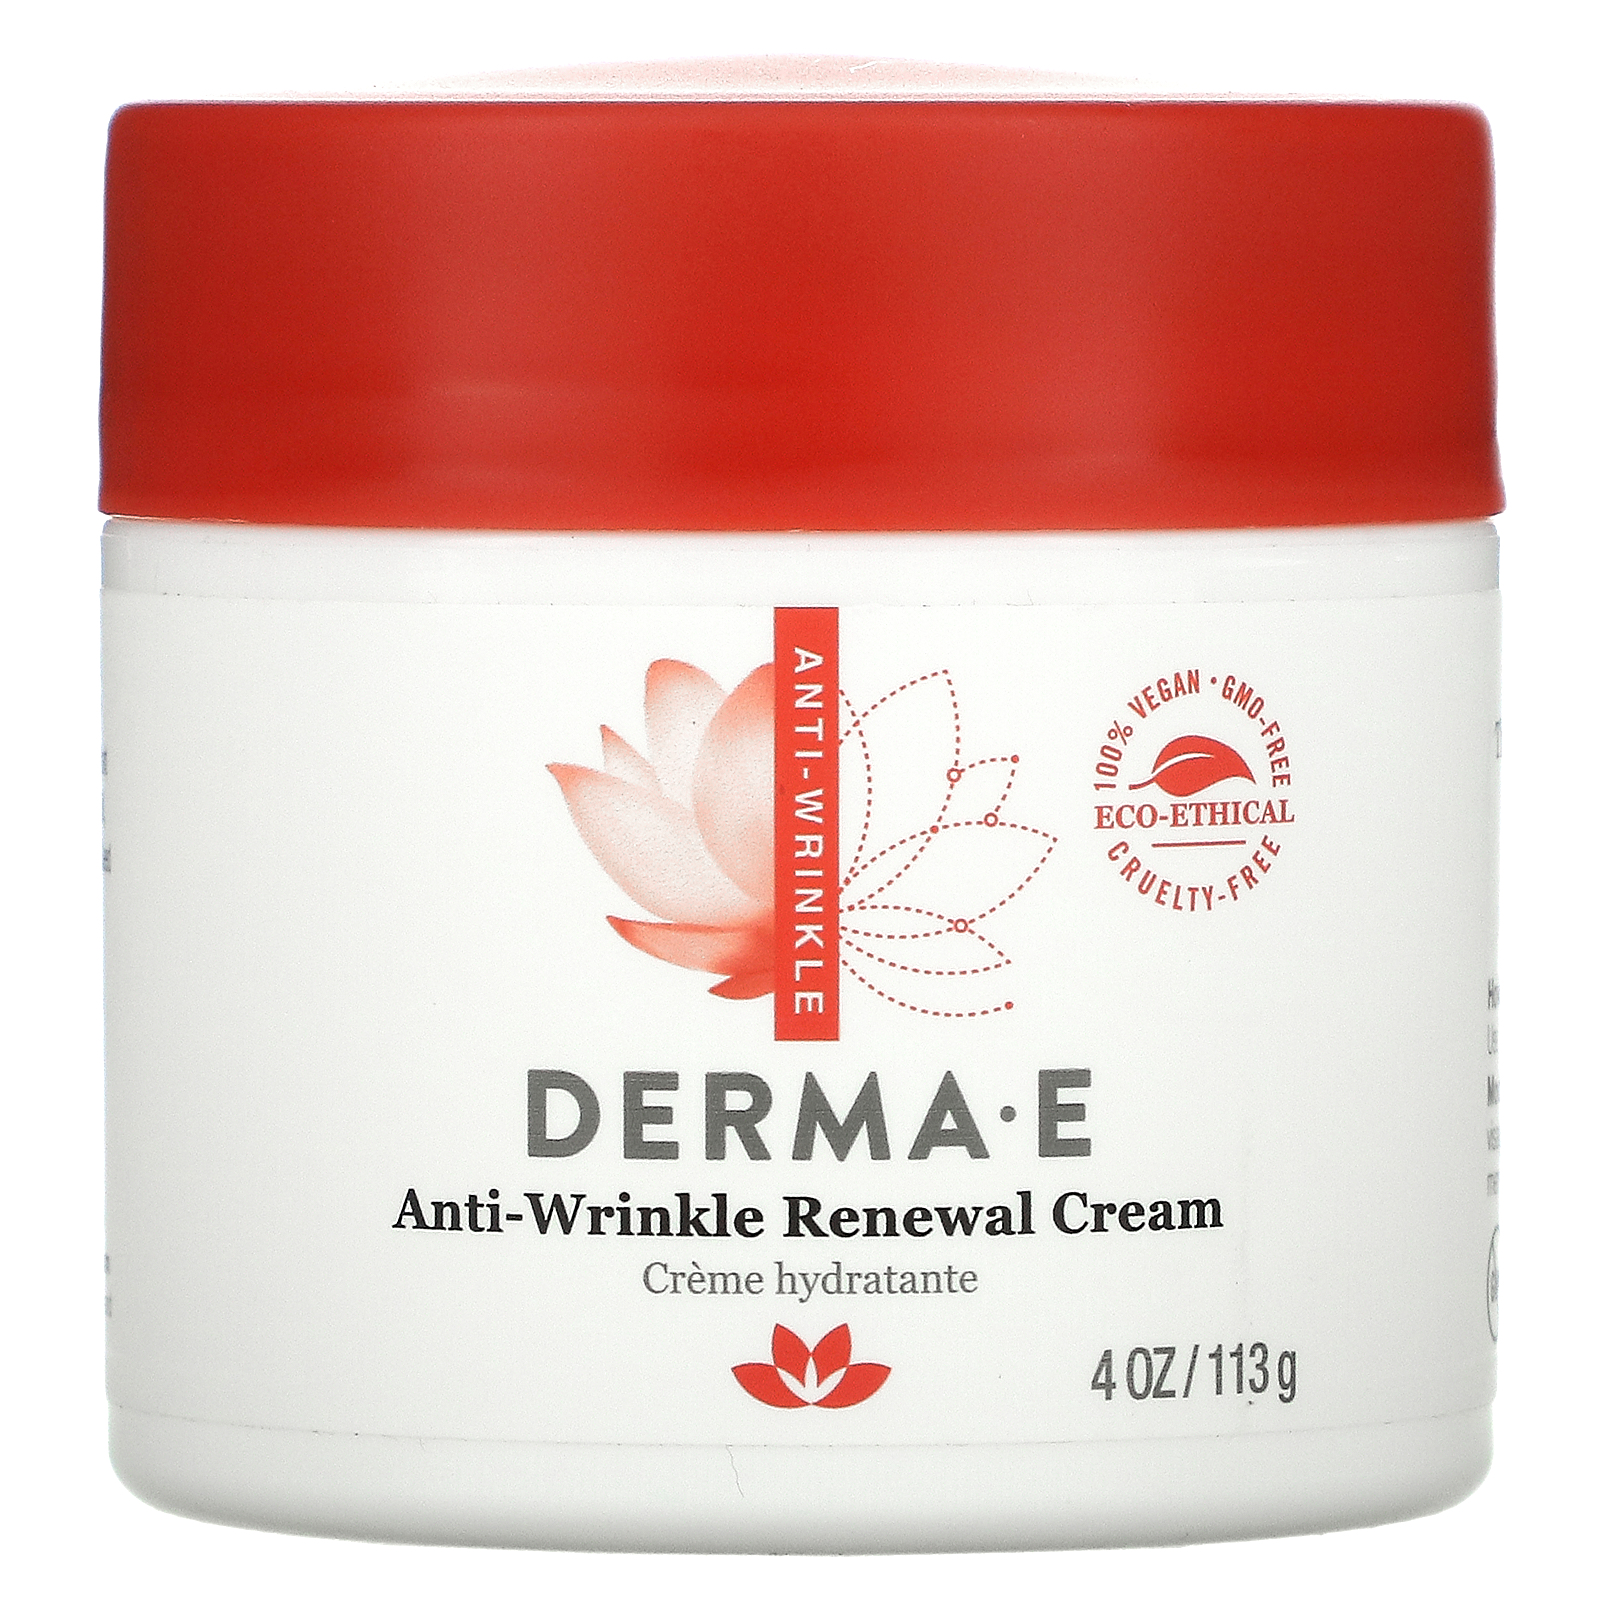 derma anti wrinkle renewal cream)